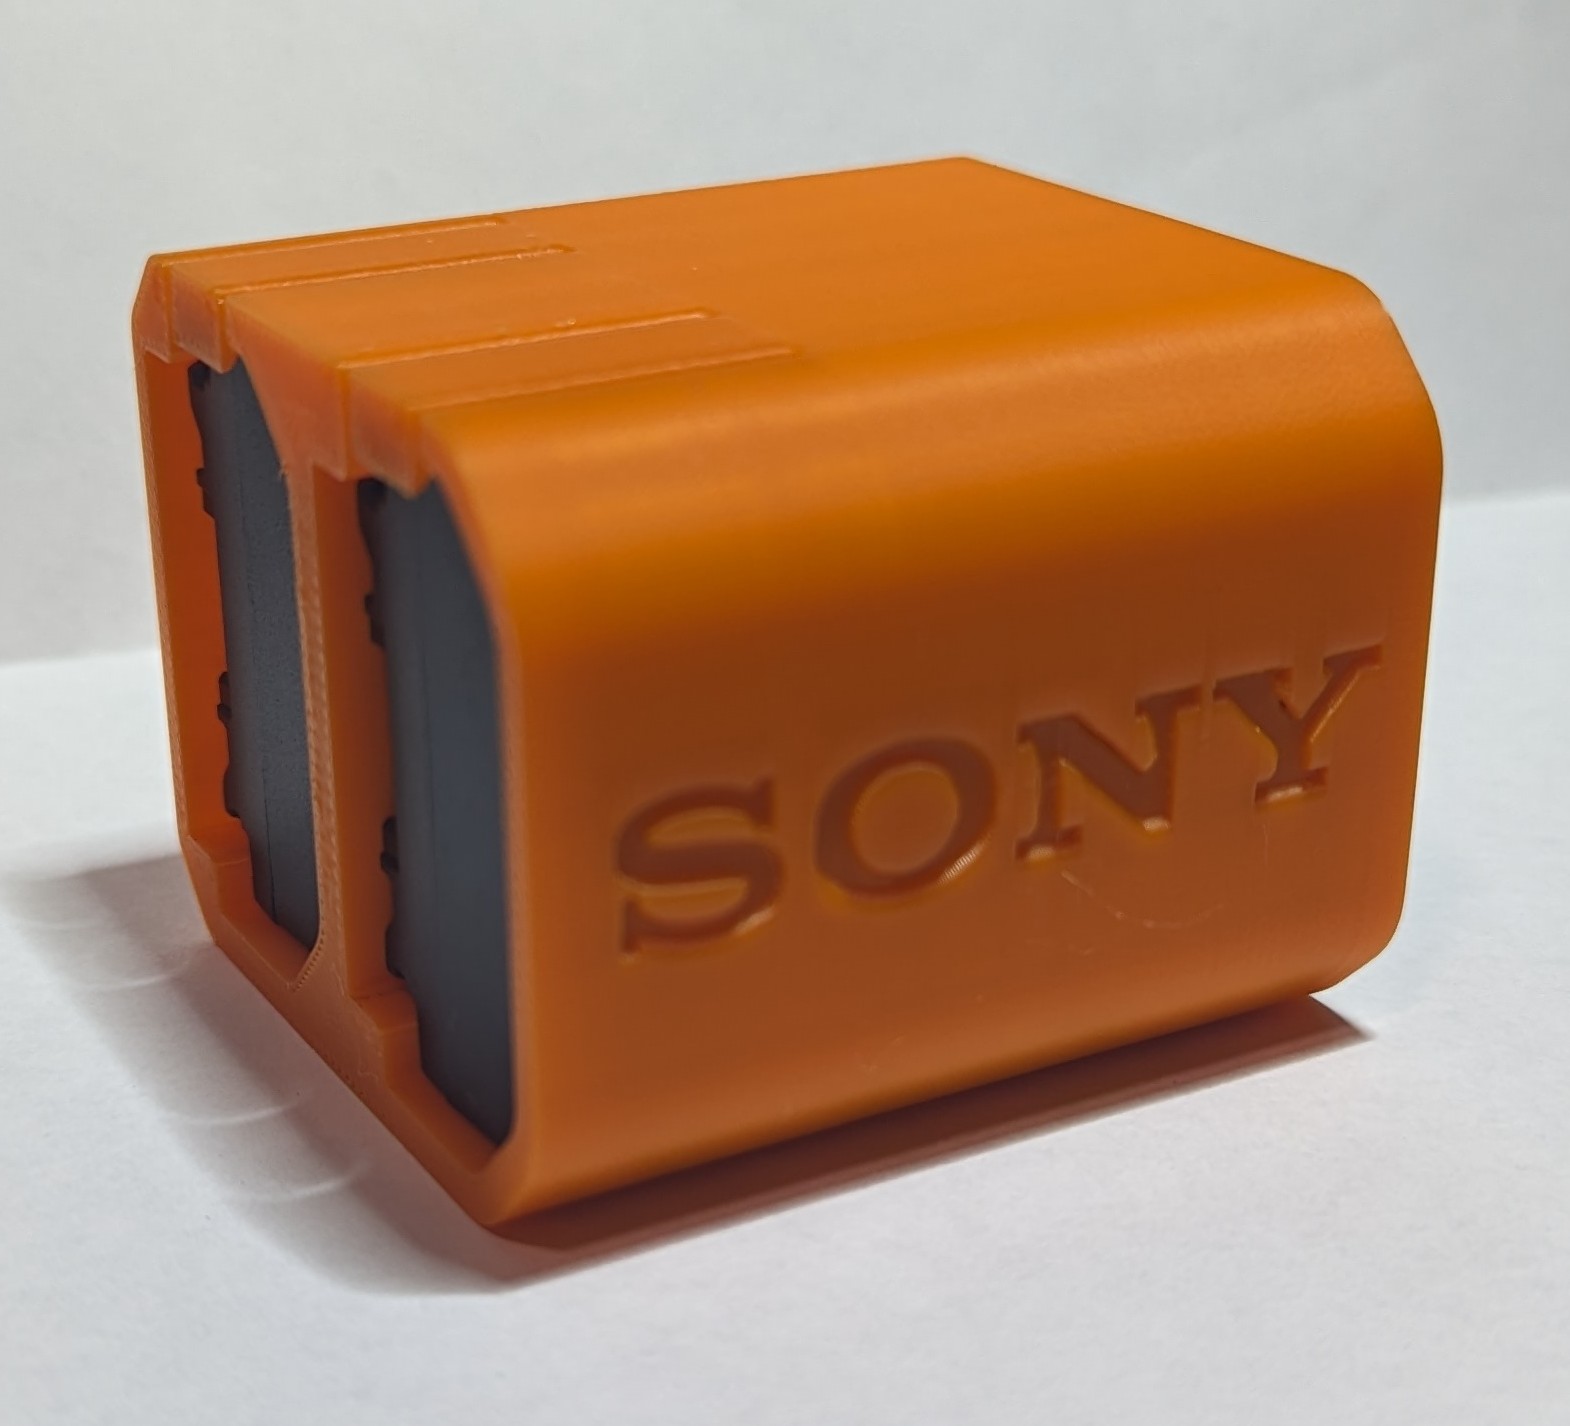 Battery Holder for Sony NP-FZ100 Battery 